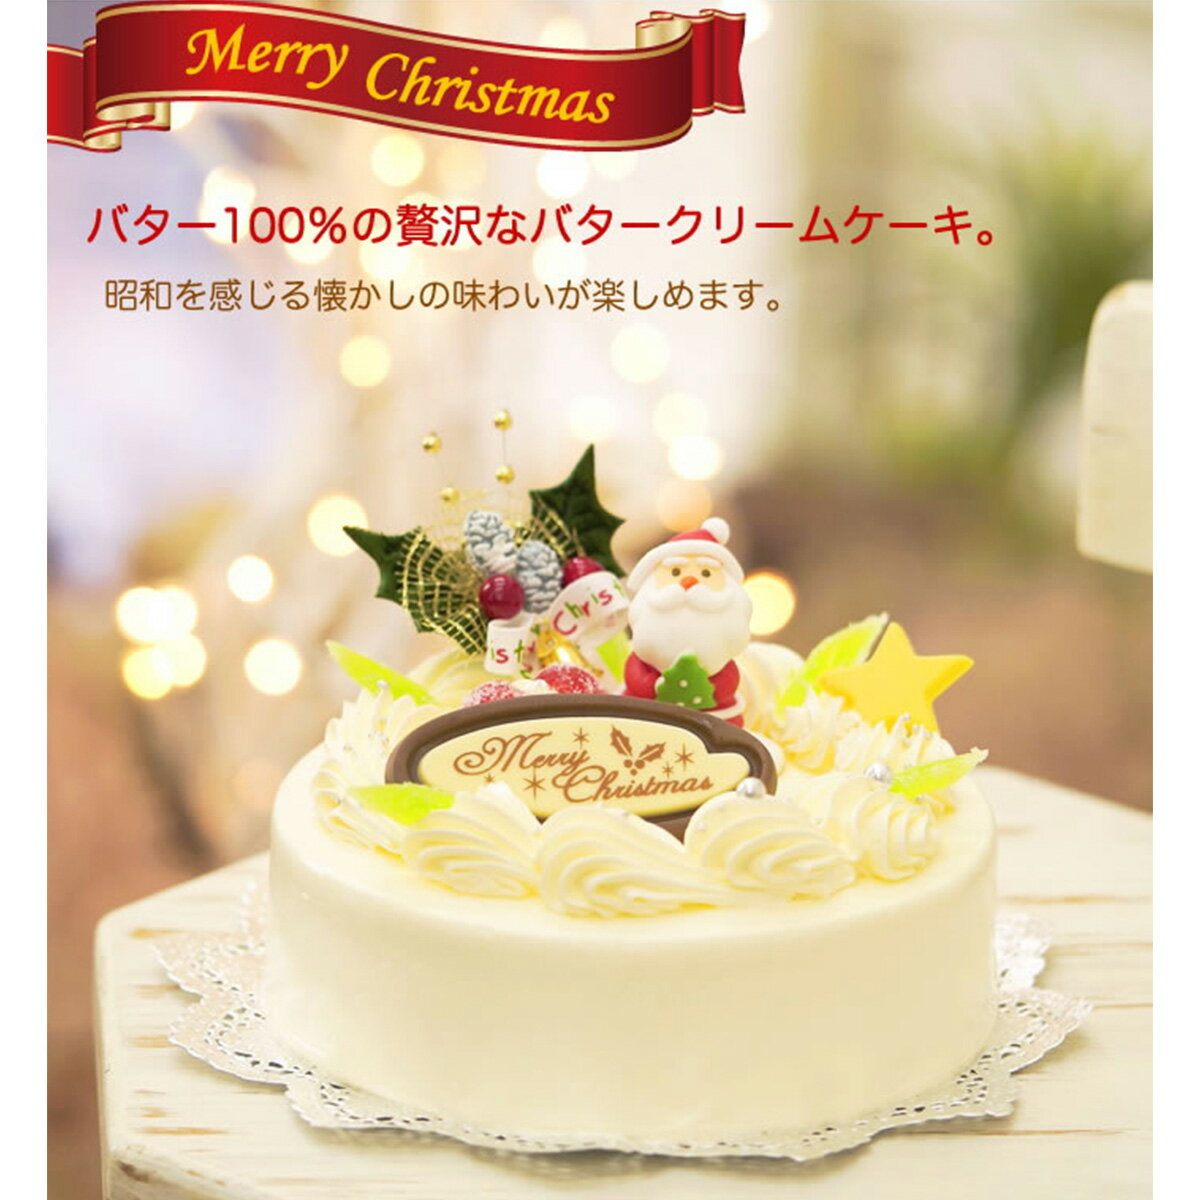 【ふるさと納税】北海道・新ひだか町のクリスマスケーキ『クリスマスバター』懐かしバタークリームケーキ【お届け予定：12/20〜12/24】冷凍発送